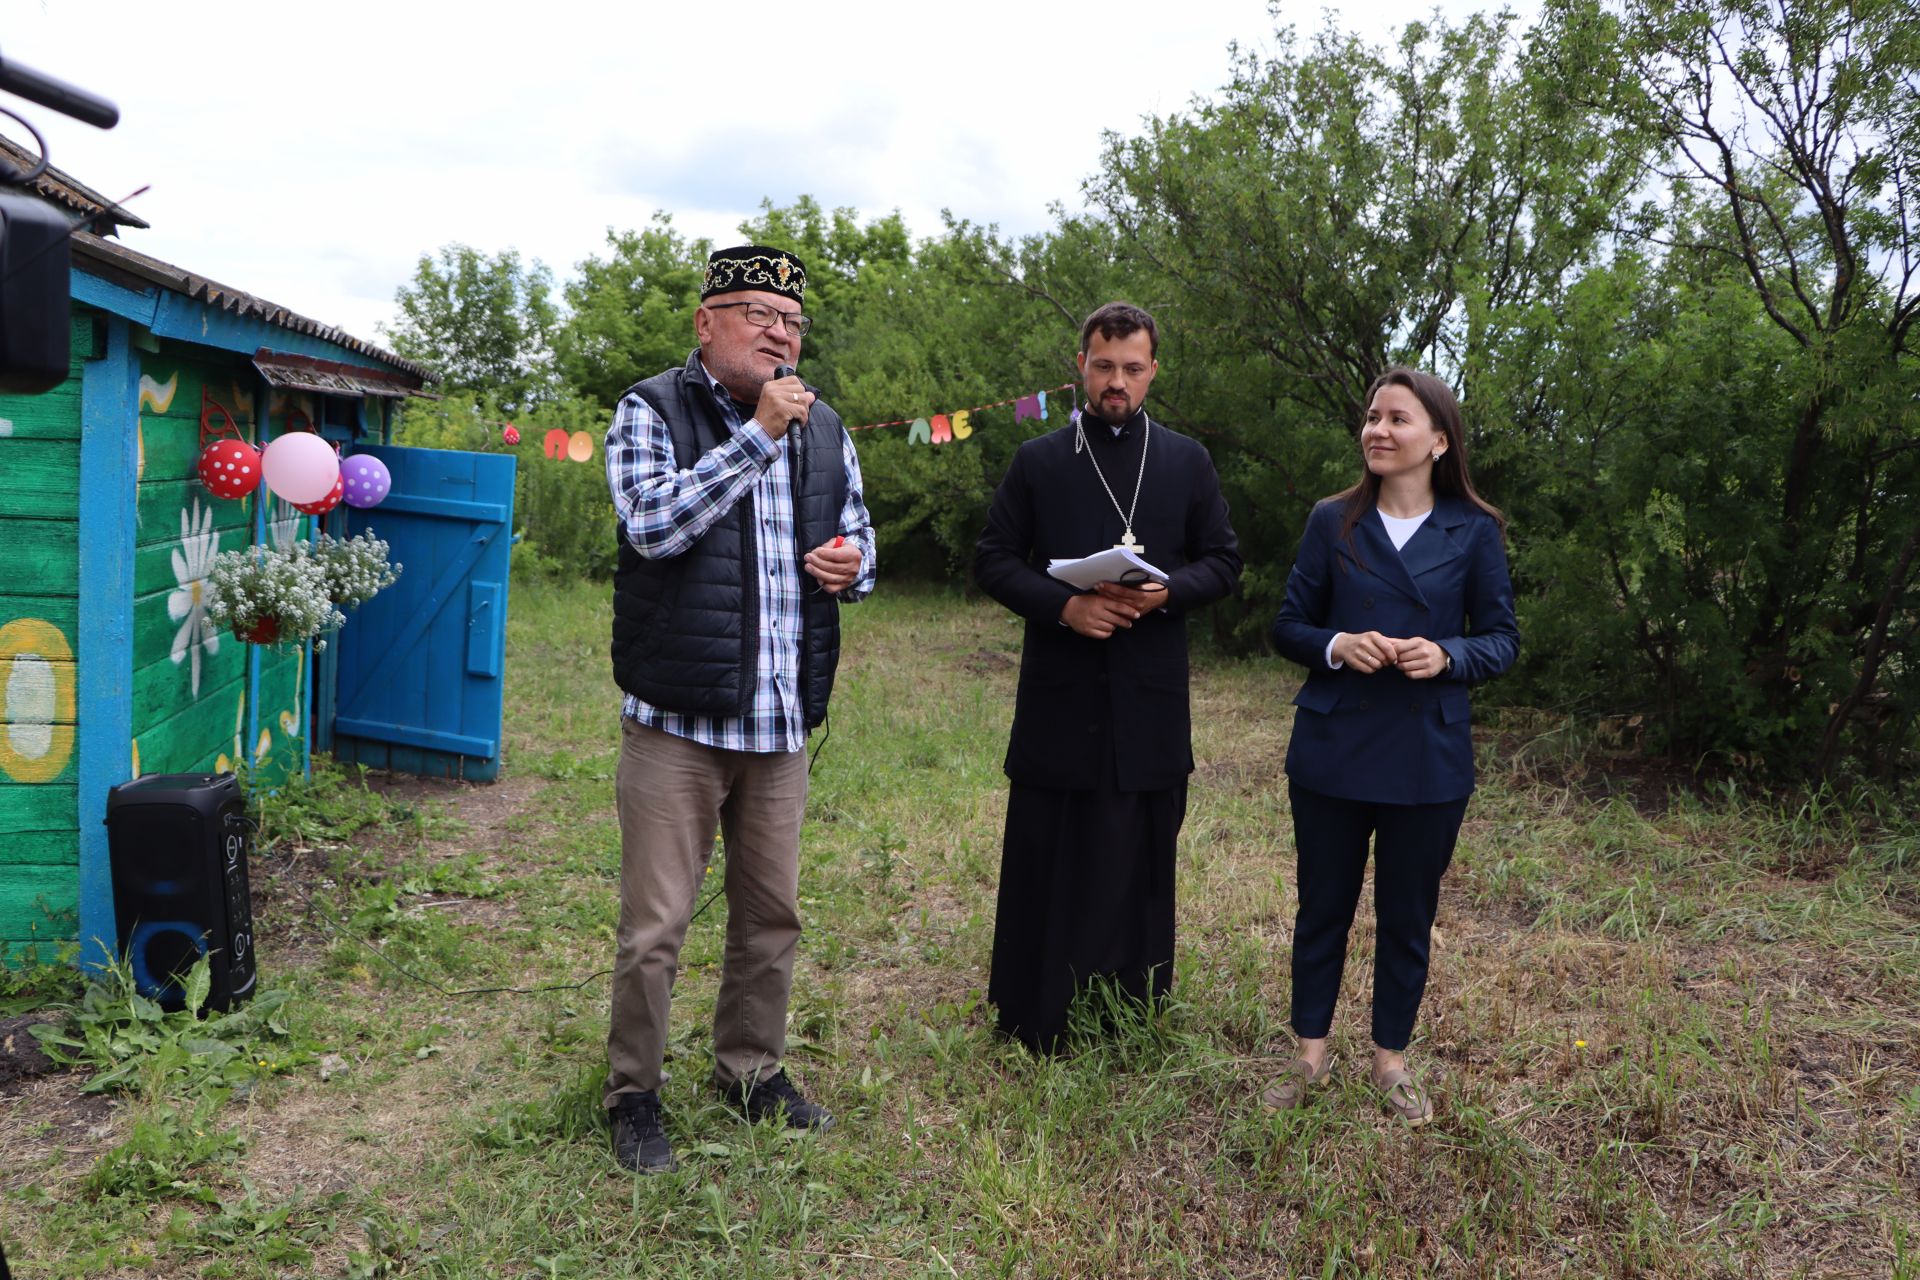 7 июня в Бишево отметили День села